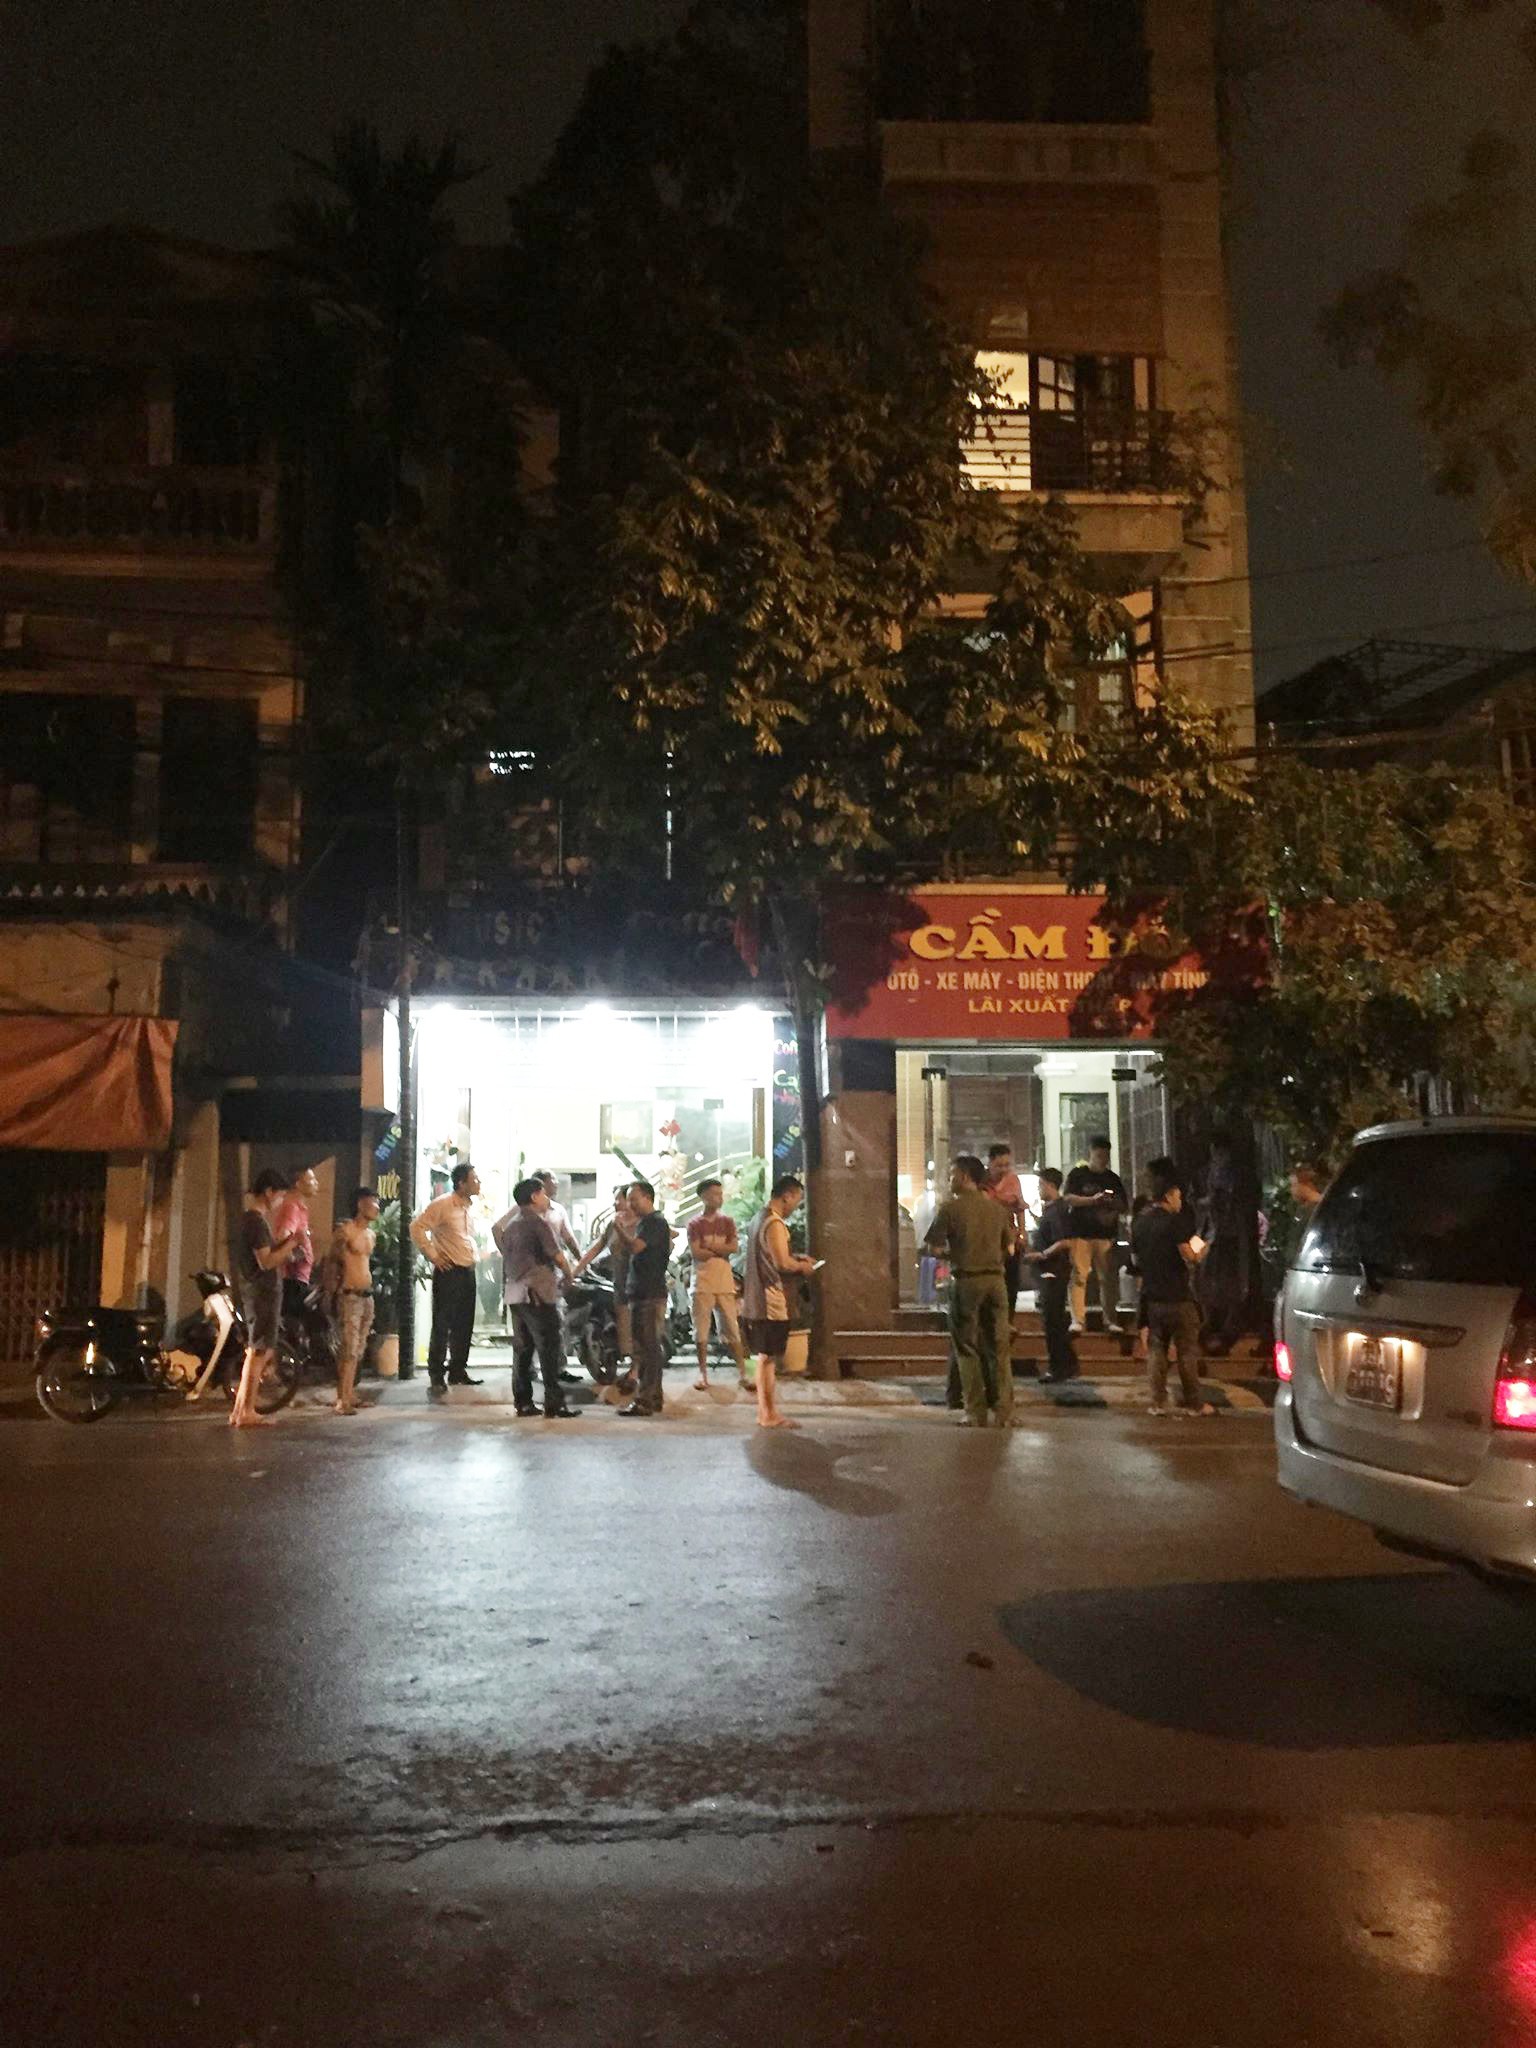 Nam thanh niên xông vào tiệm cầm đồ ở Hà Nội, đâm nữ chủ tiệm rồi kéo nạn nhân lên tầng 2 cố thủ - Ảnh 1.